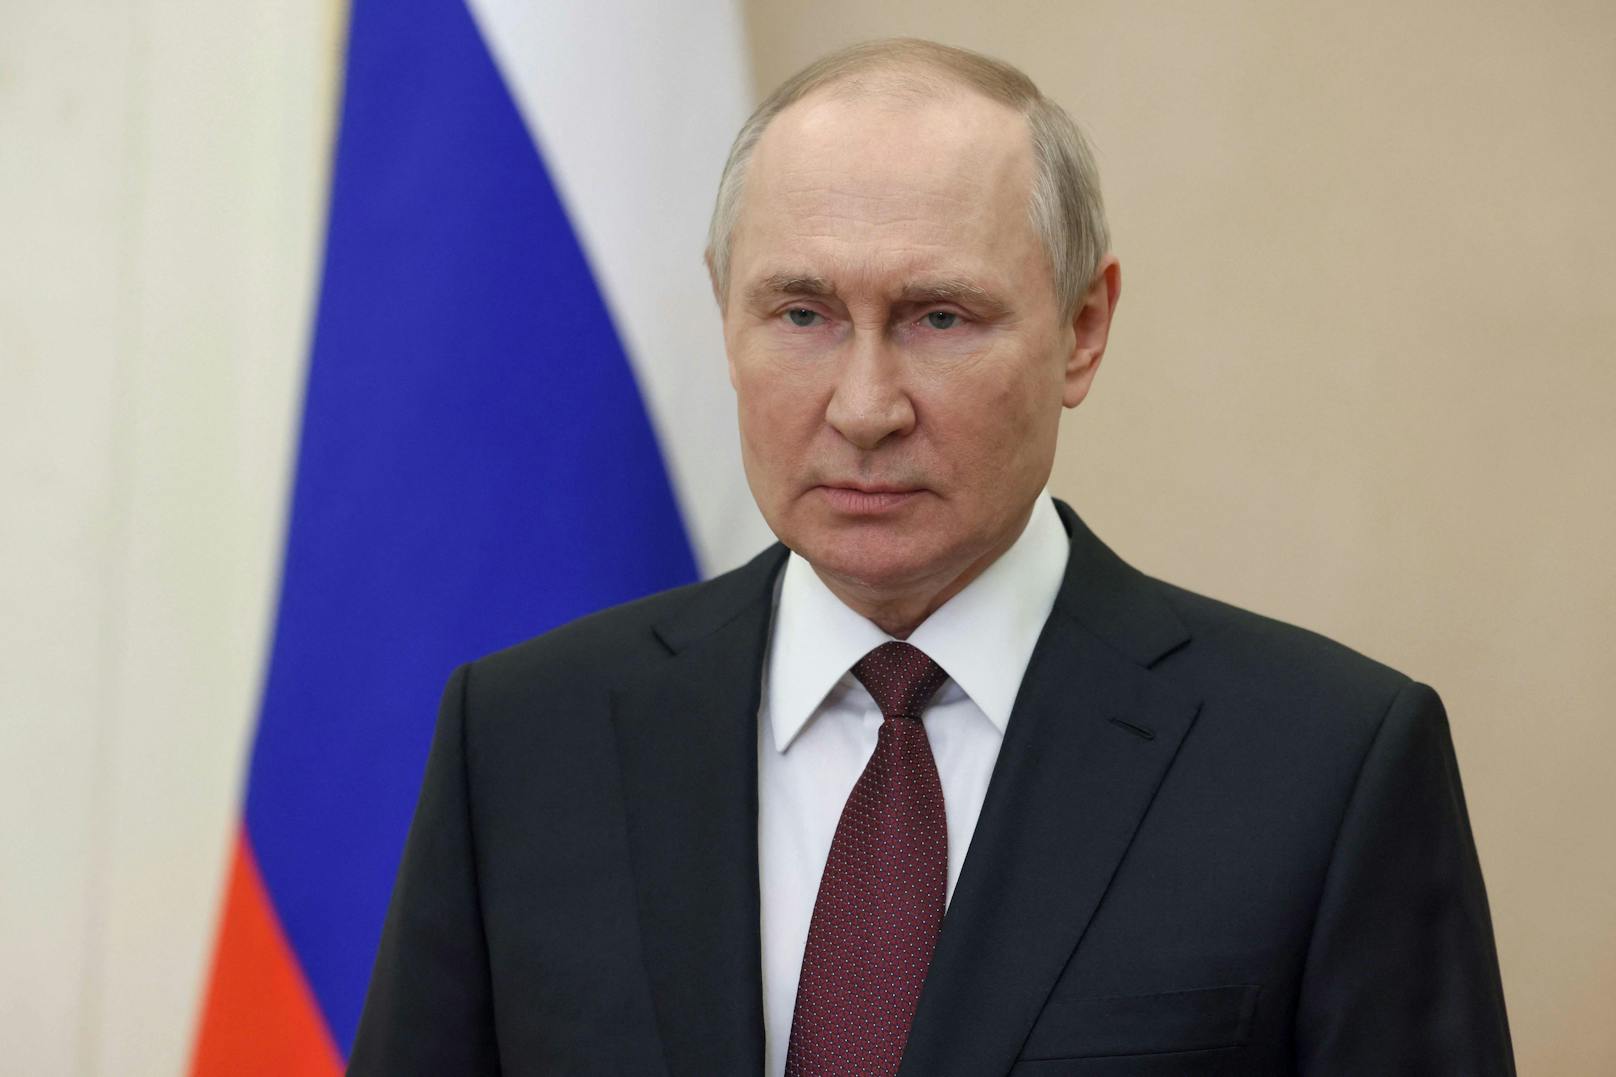 Kreml-Chef Wladimir Putin reist nicht zu G20-Gipfel